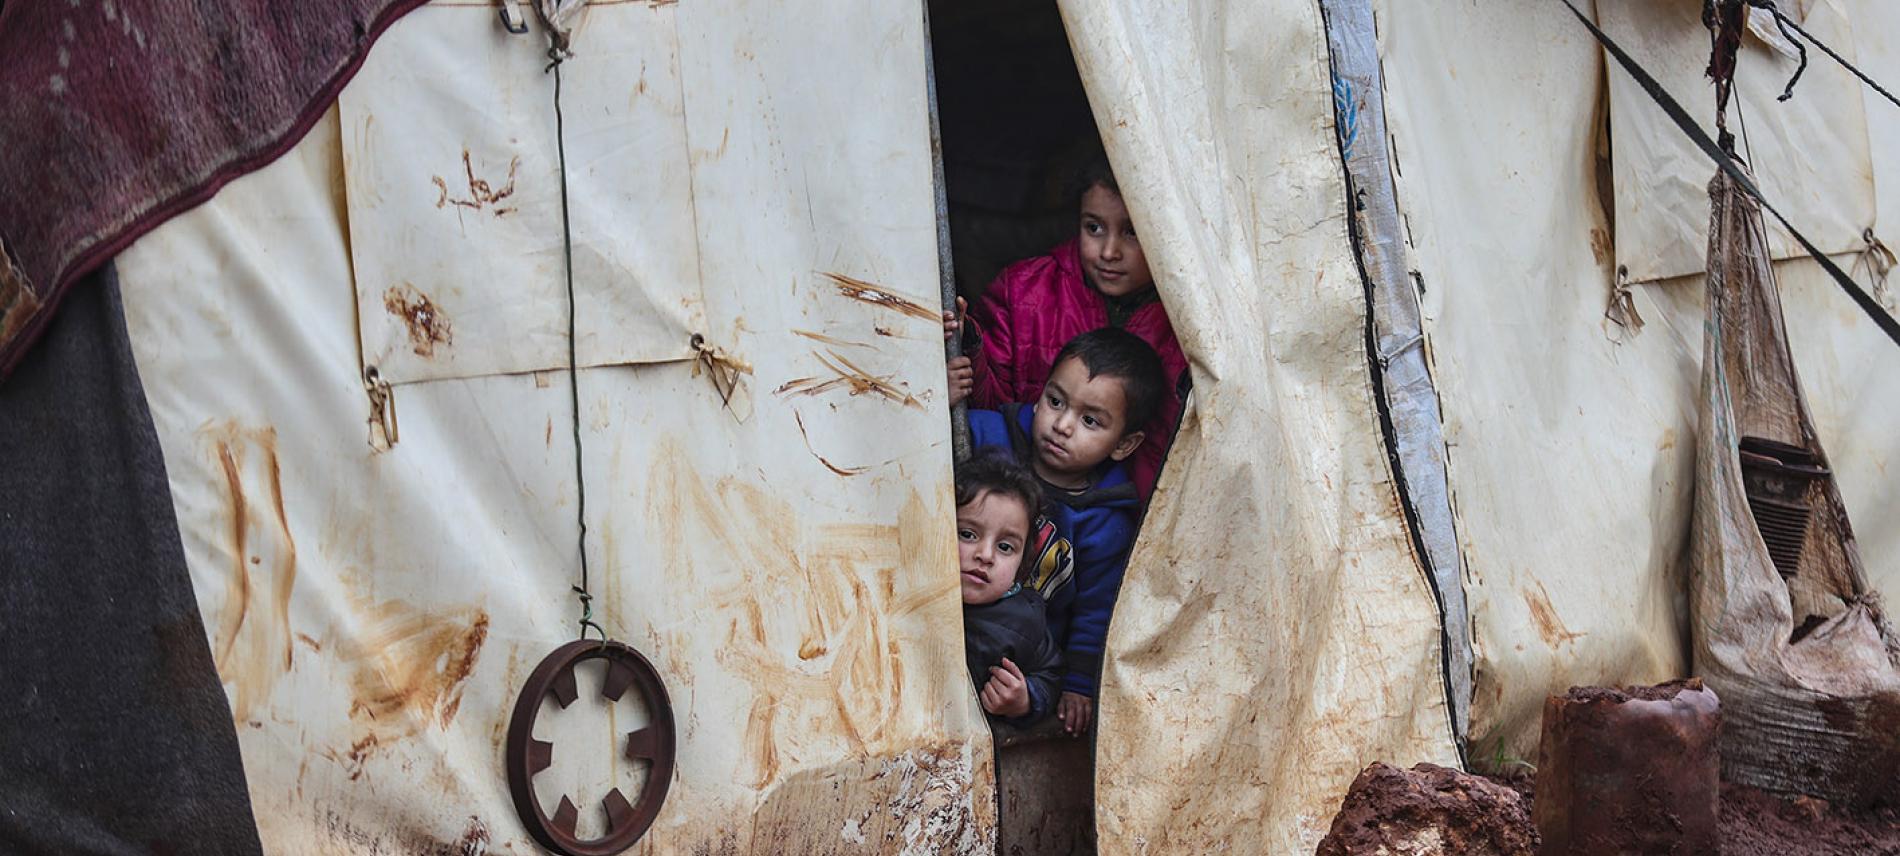 Kinder in einem syrischen Flüchtlingscamp. Foto AFP / Esra Hacioglu